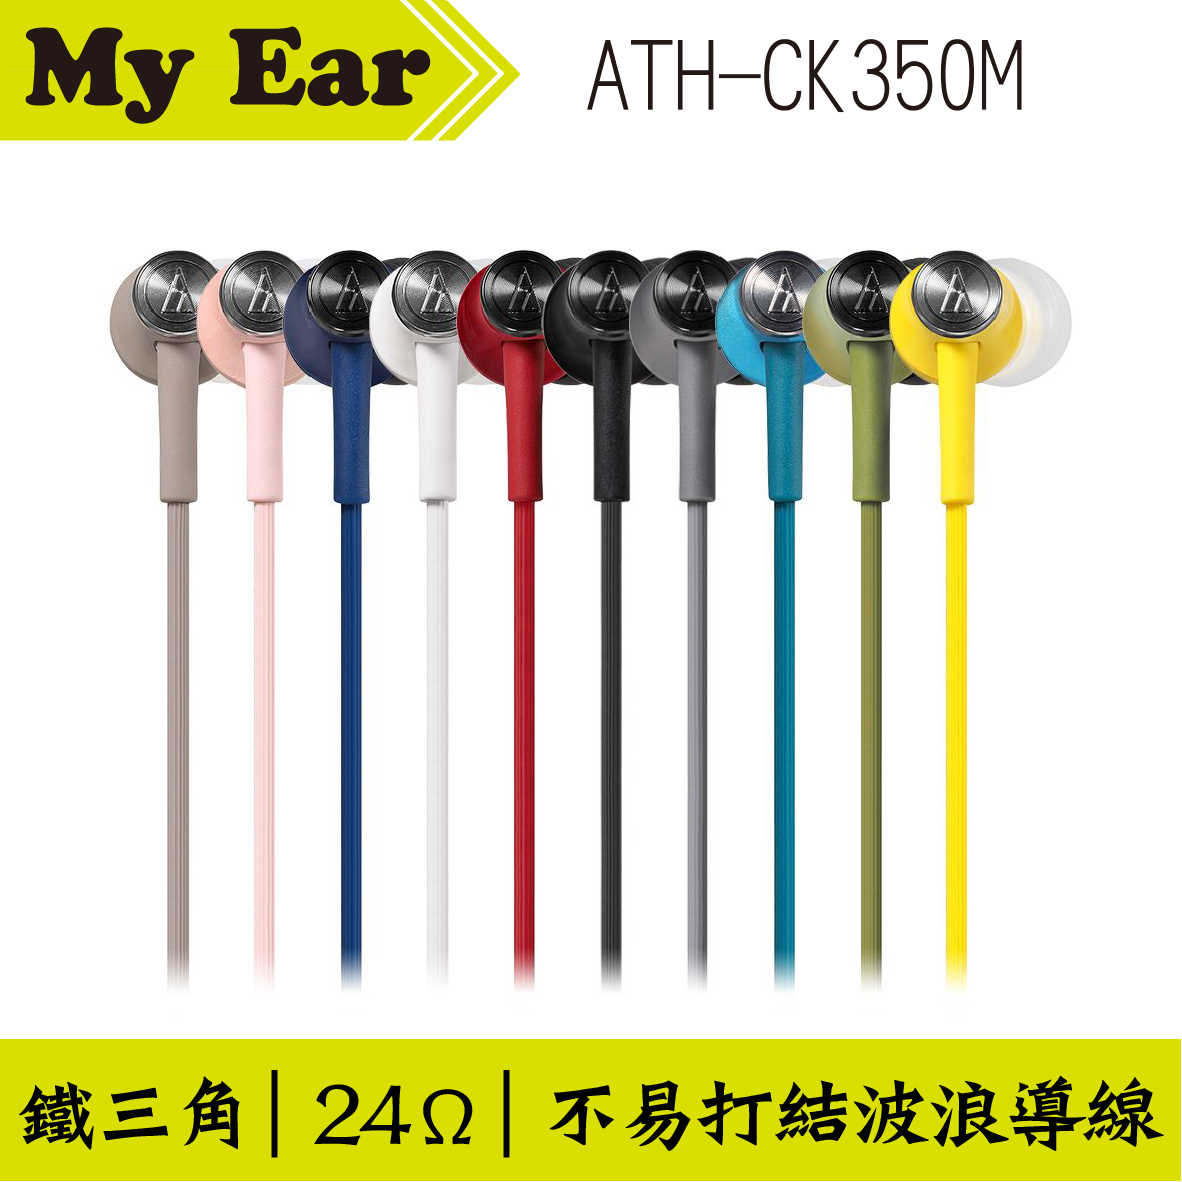 鐵三角 ATH-CK350M 耳道式耳機 湖水藍色｜My Ear 耳機專門店